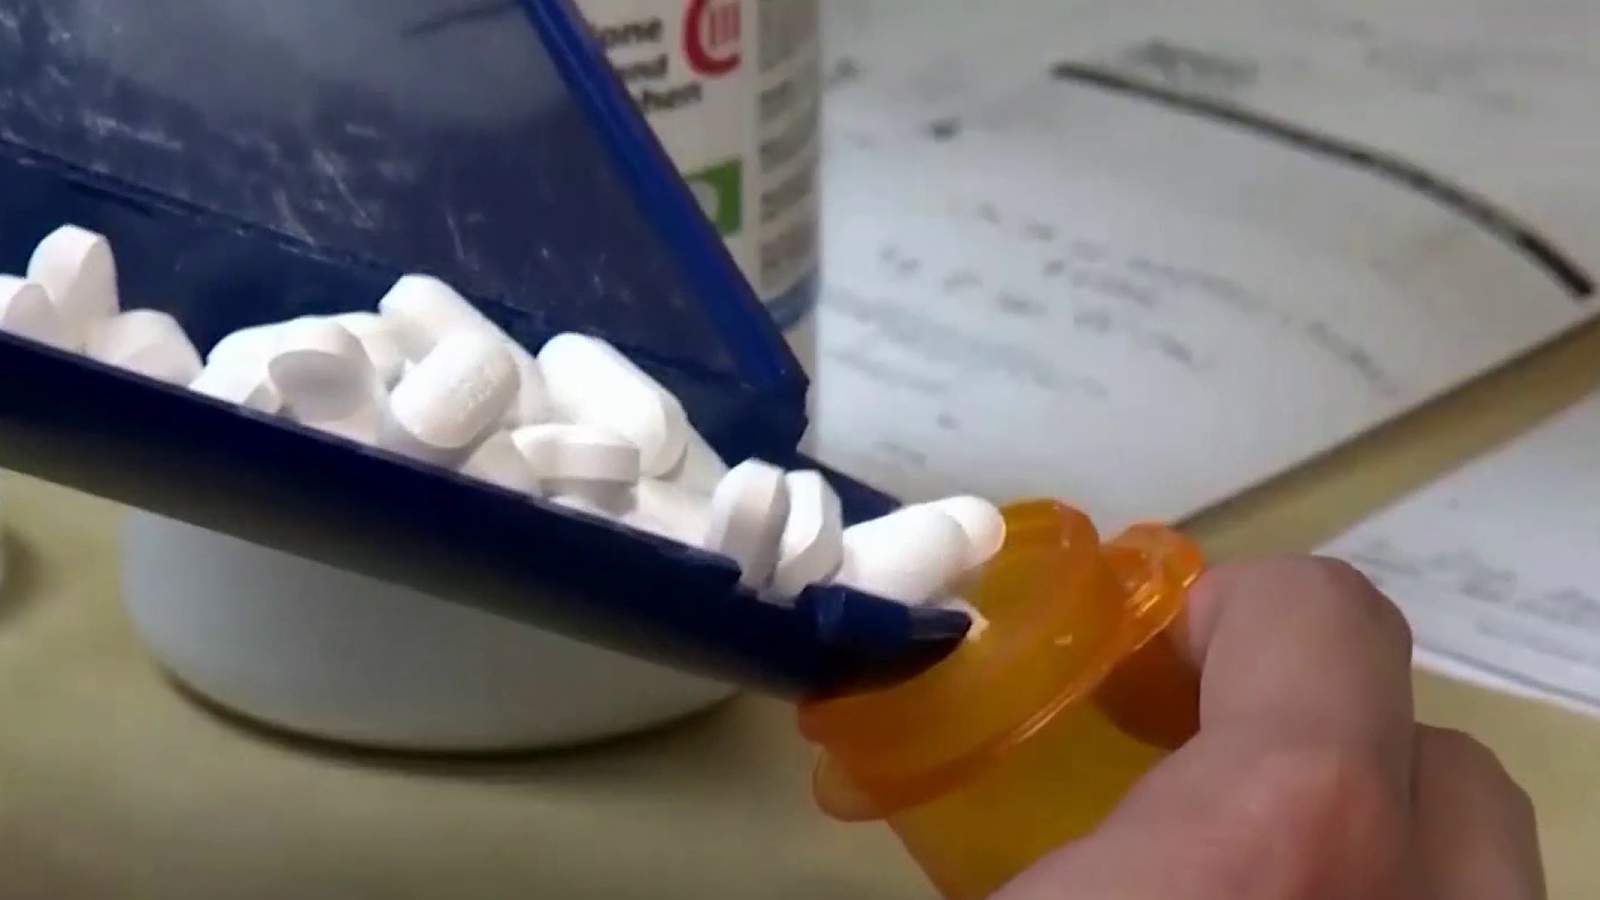 Community leaders looking to stop opioid overdose deaths, blame pandemic